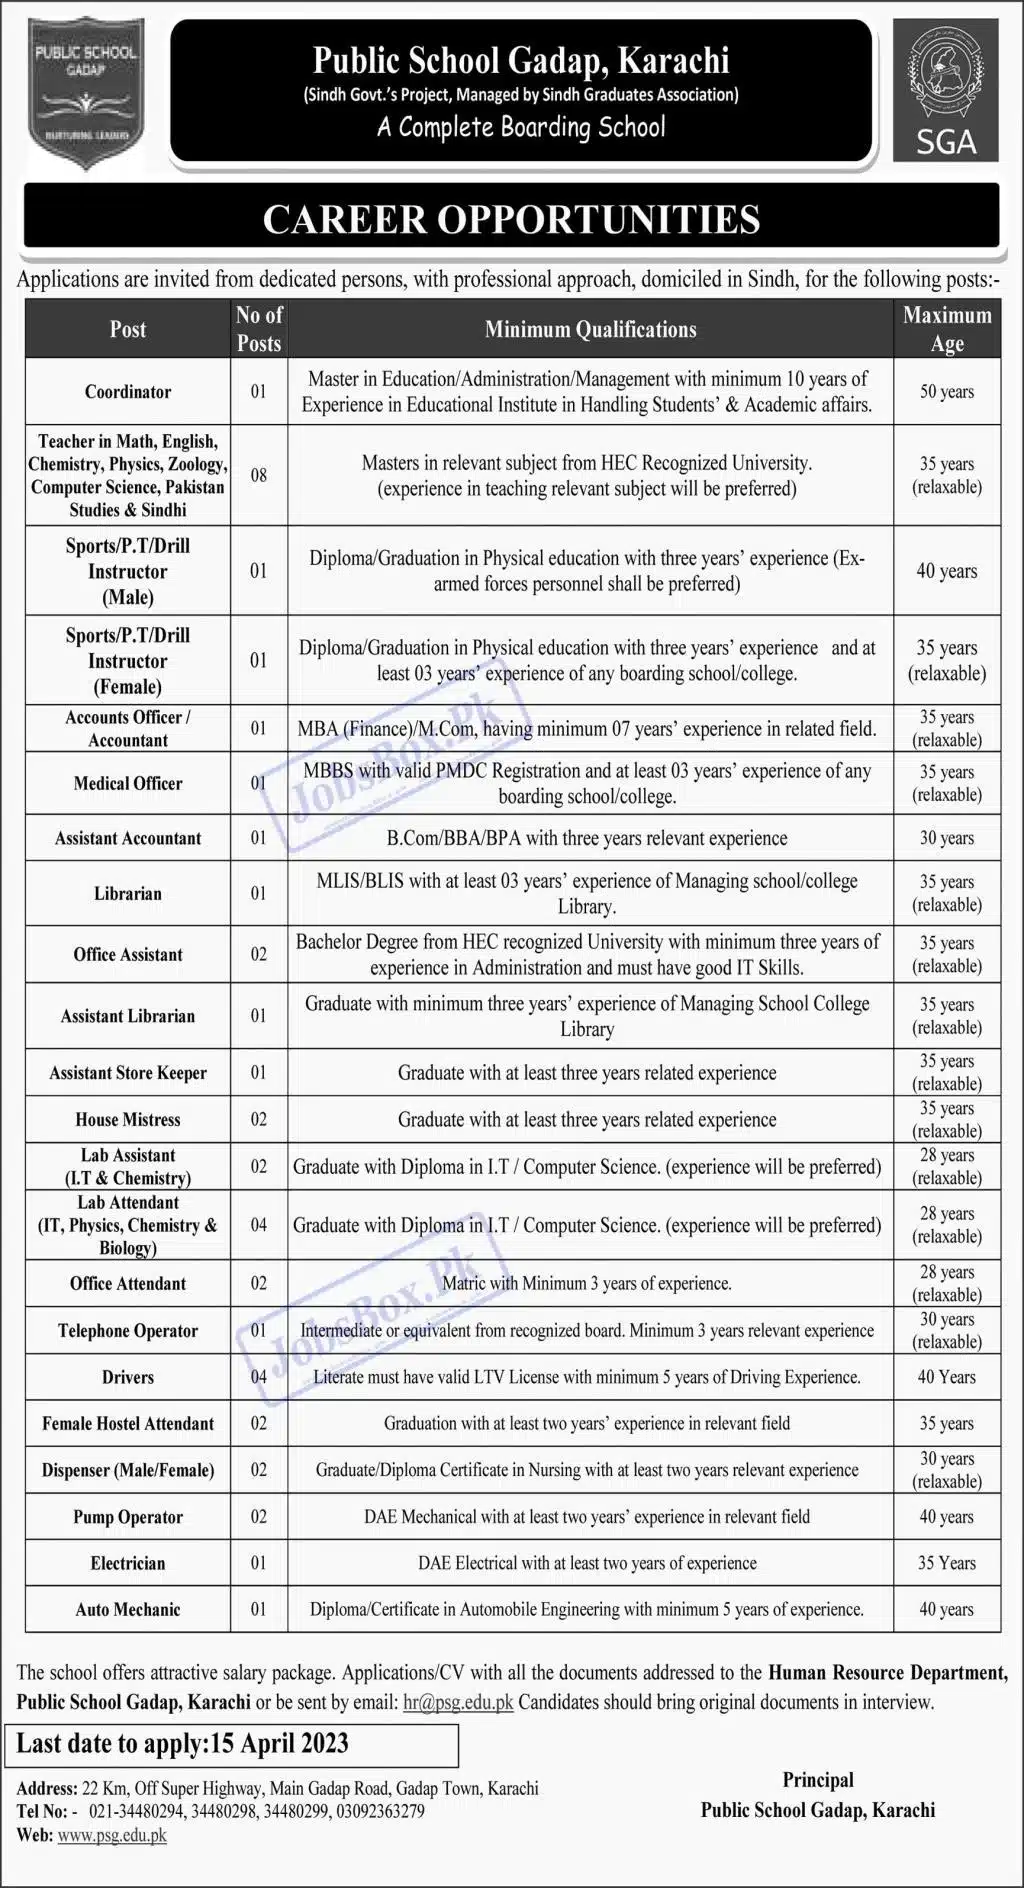 Public School Gadap Karachi Jobs 2023